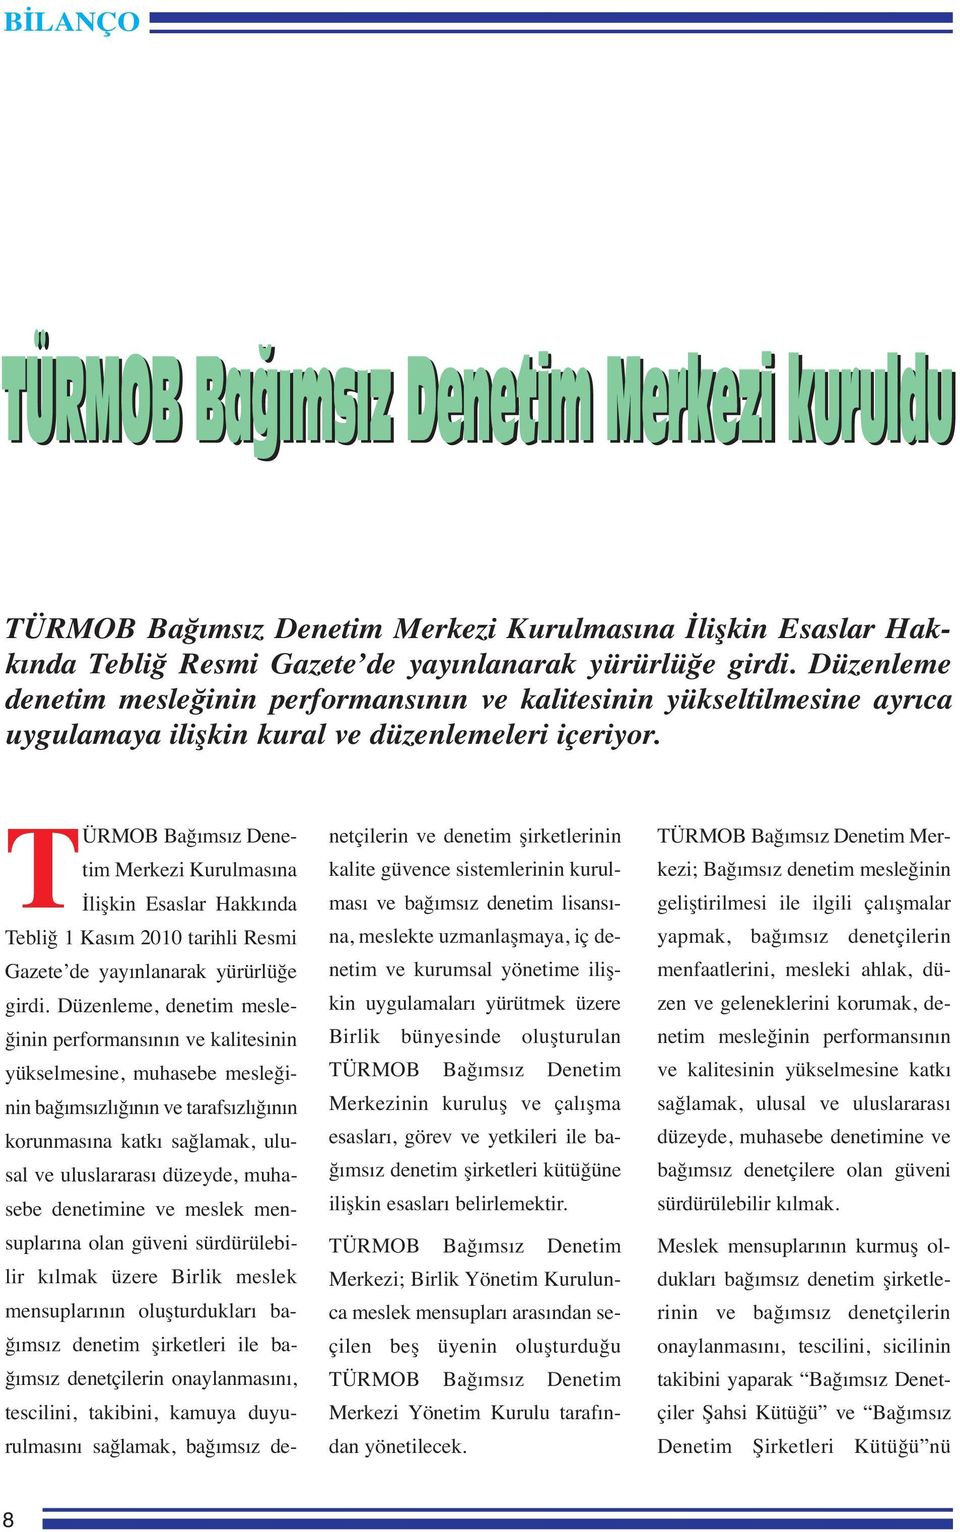 TÜRMOB Bağımsız Denetim Merkezi Kurulmasına İlişkin Esaslar Hakkında Tebliğ 1 Kasım 2010 tarihli Resmi Gazete de yayınlanarak yürürlüğe girdi.